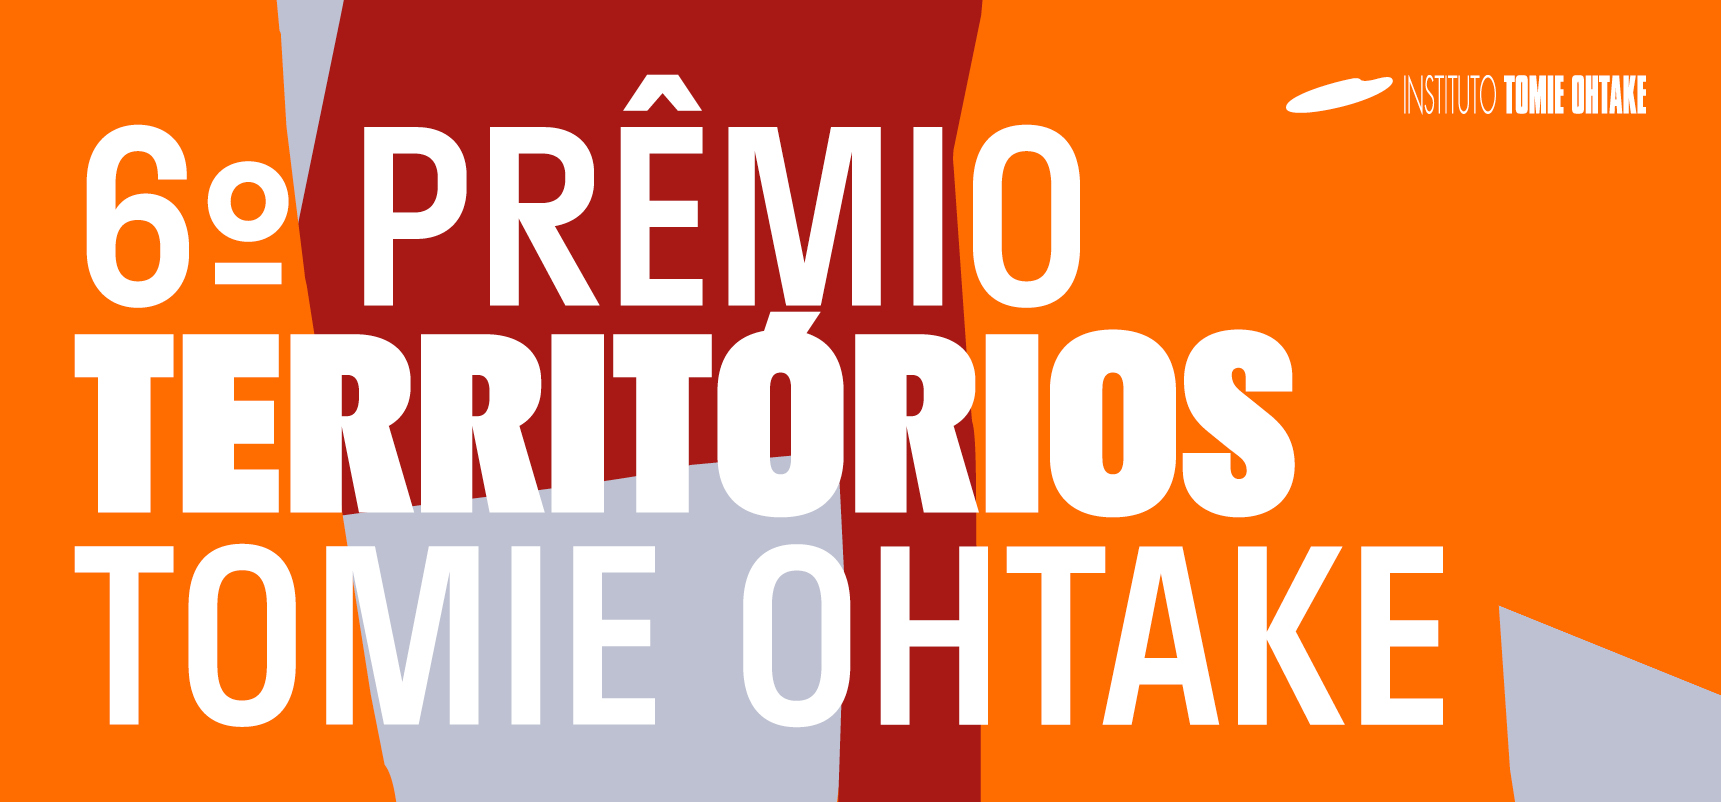 PRÊMIO TERRITÓRIOS TOMIE OHTAKE